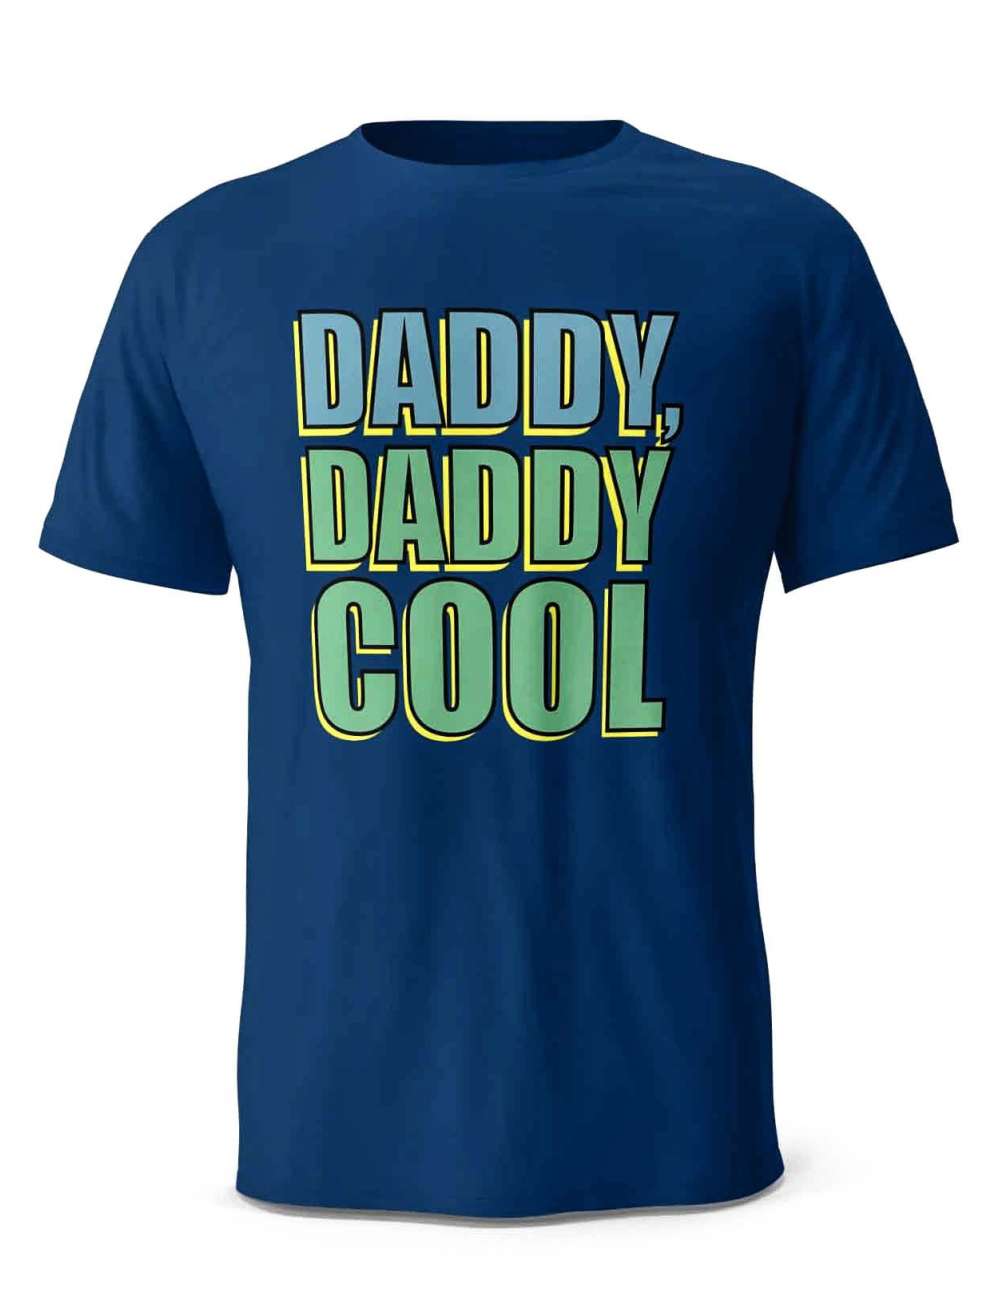 Koszulka Daddy Daddy Cool, Prezent T-shirt dla Taty